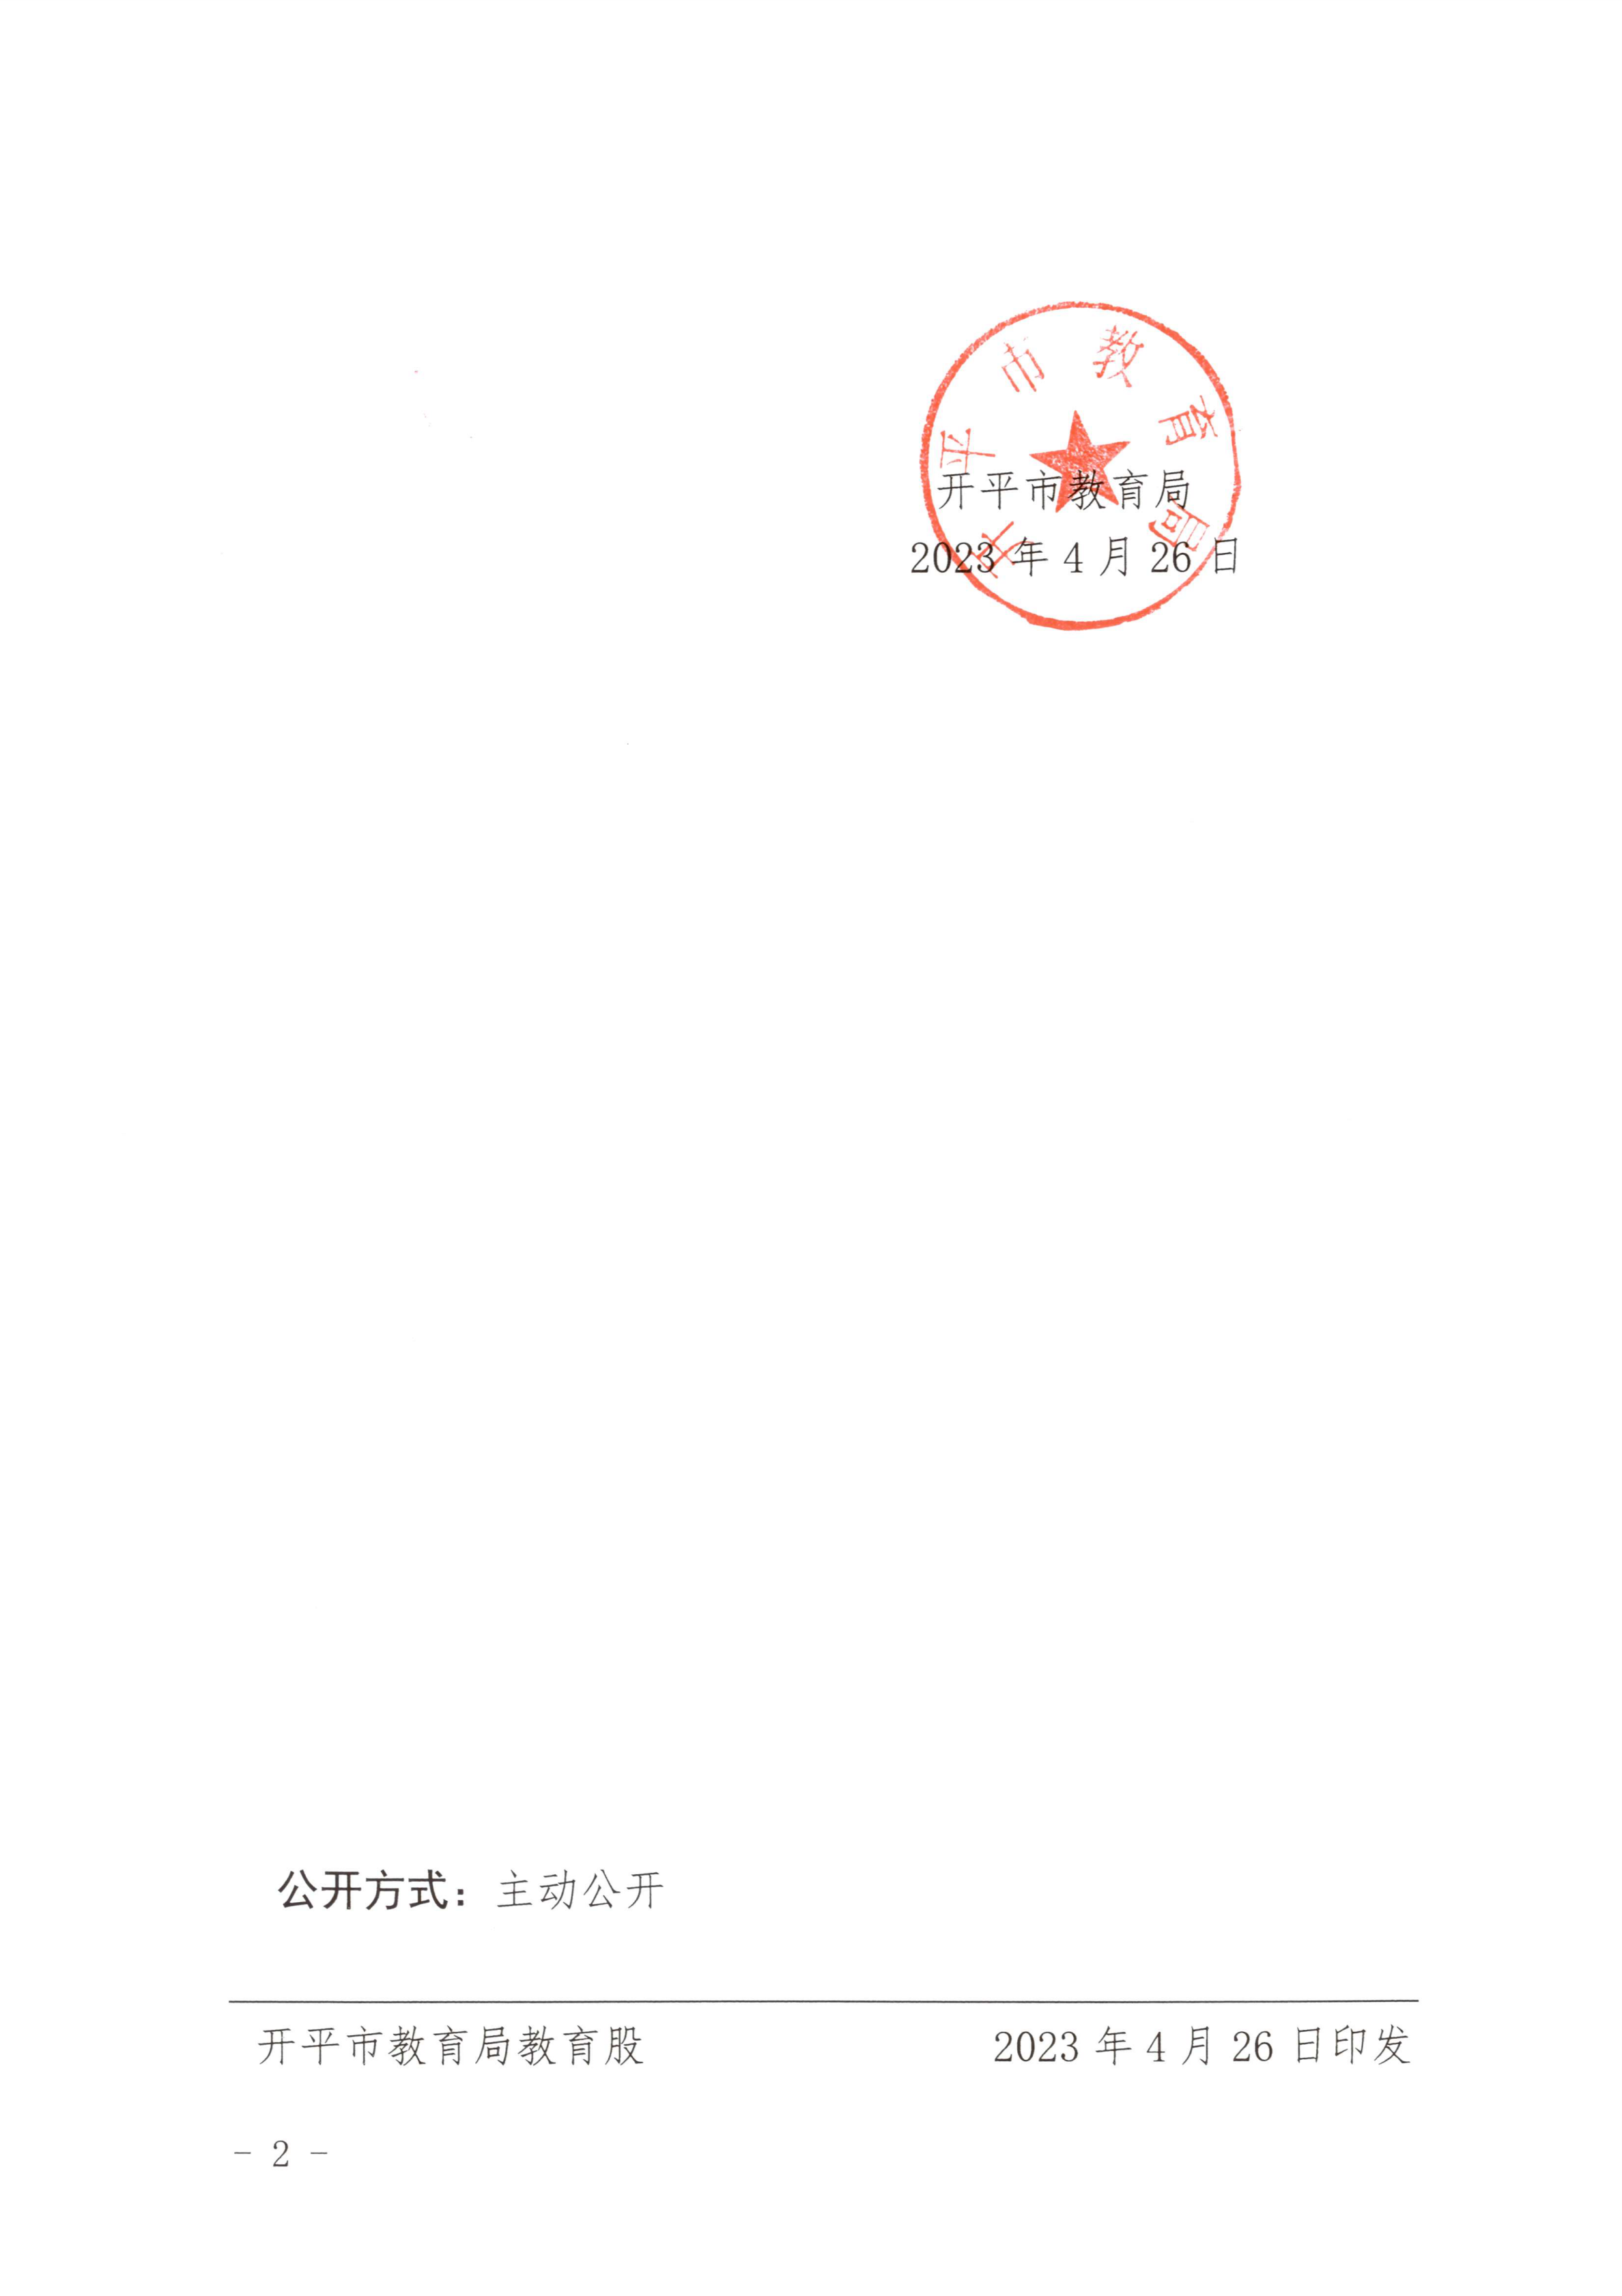 开教民〔2023〕2号关于终止开平市培胜幼儿园办学许可的批复_01.png